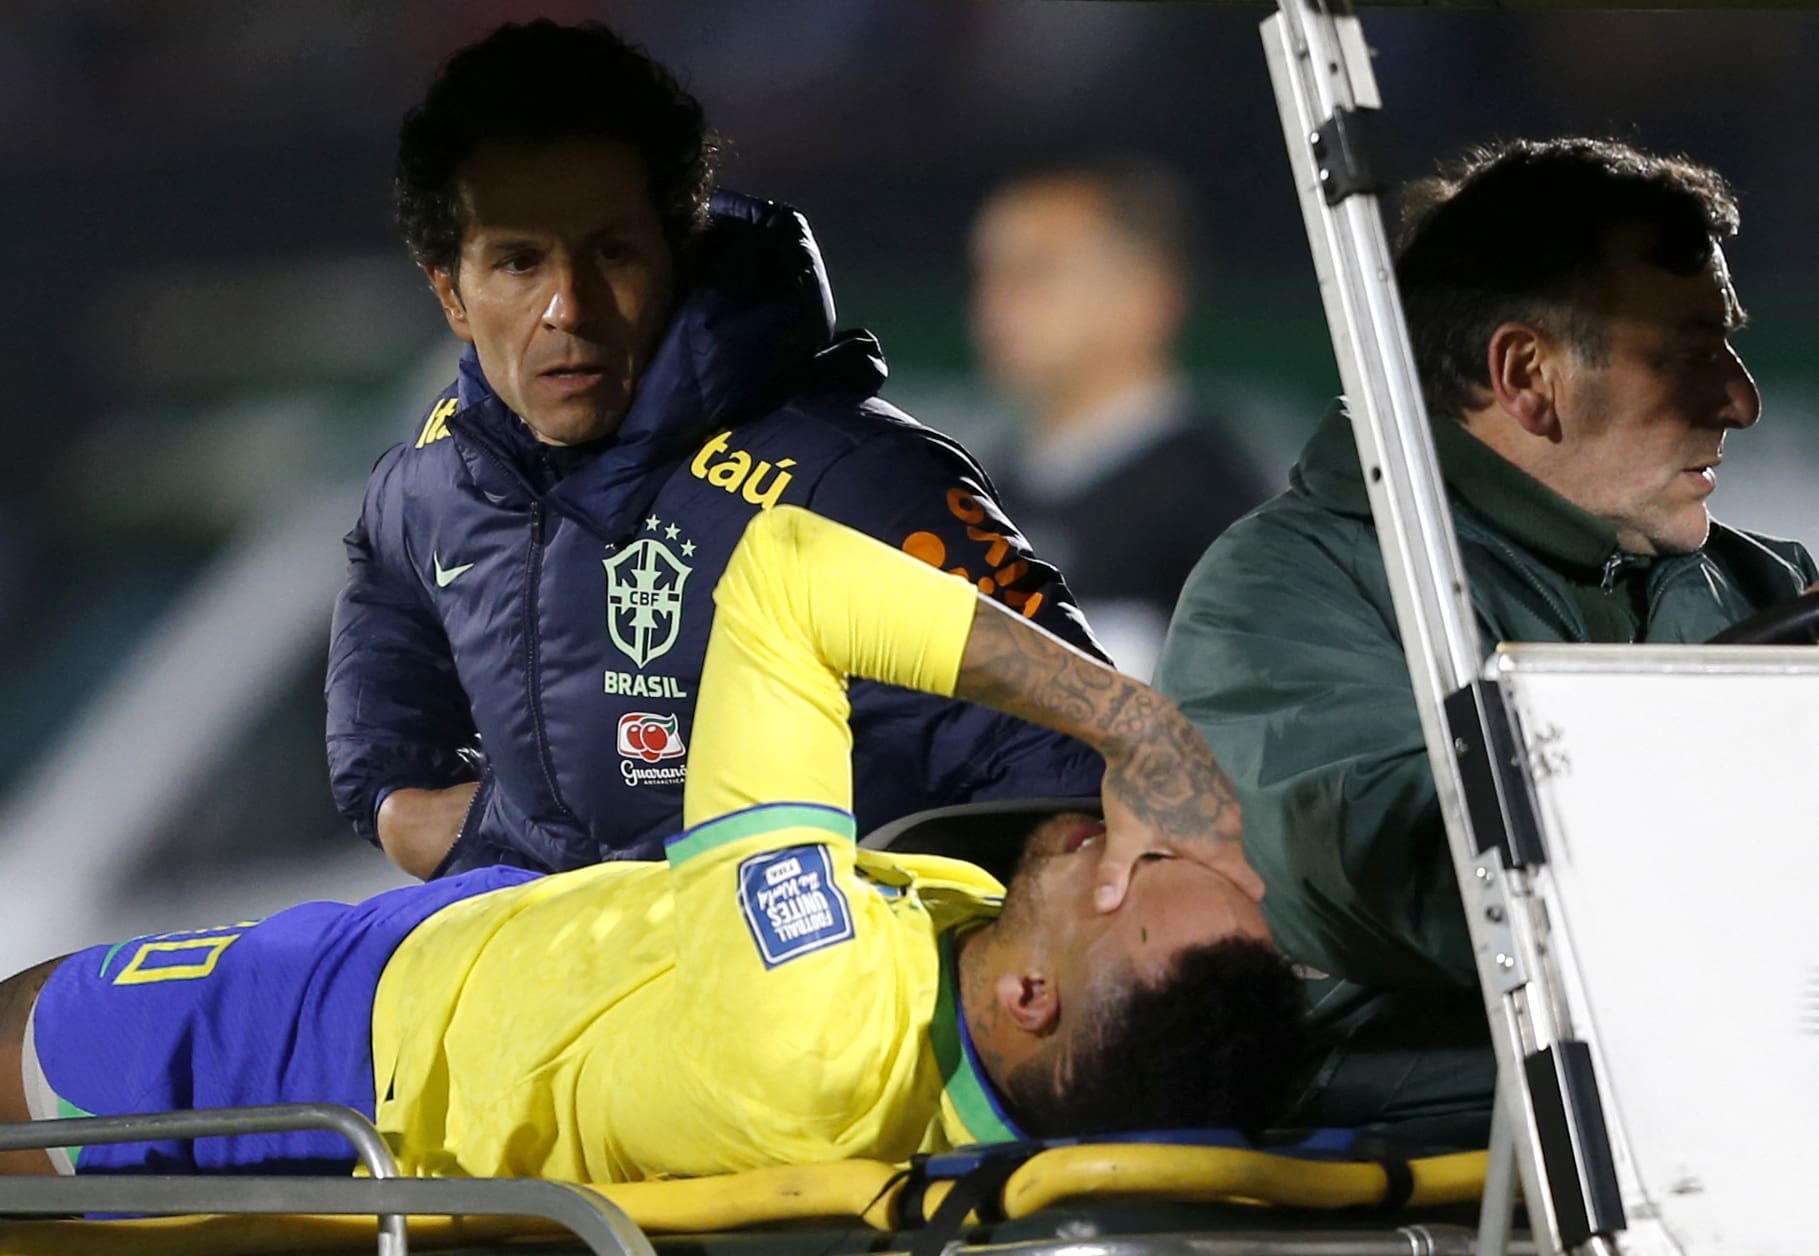 neymar lesiona-se novamente e sai em lagrimas